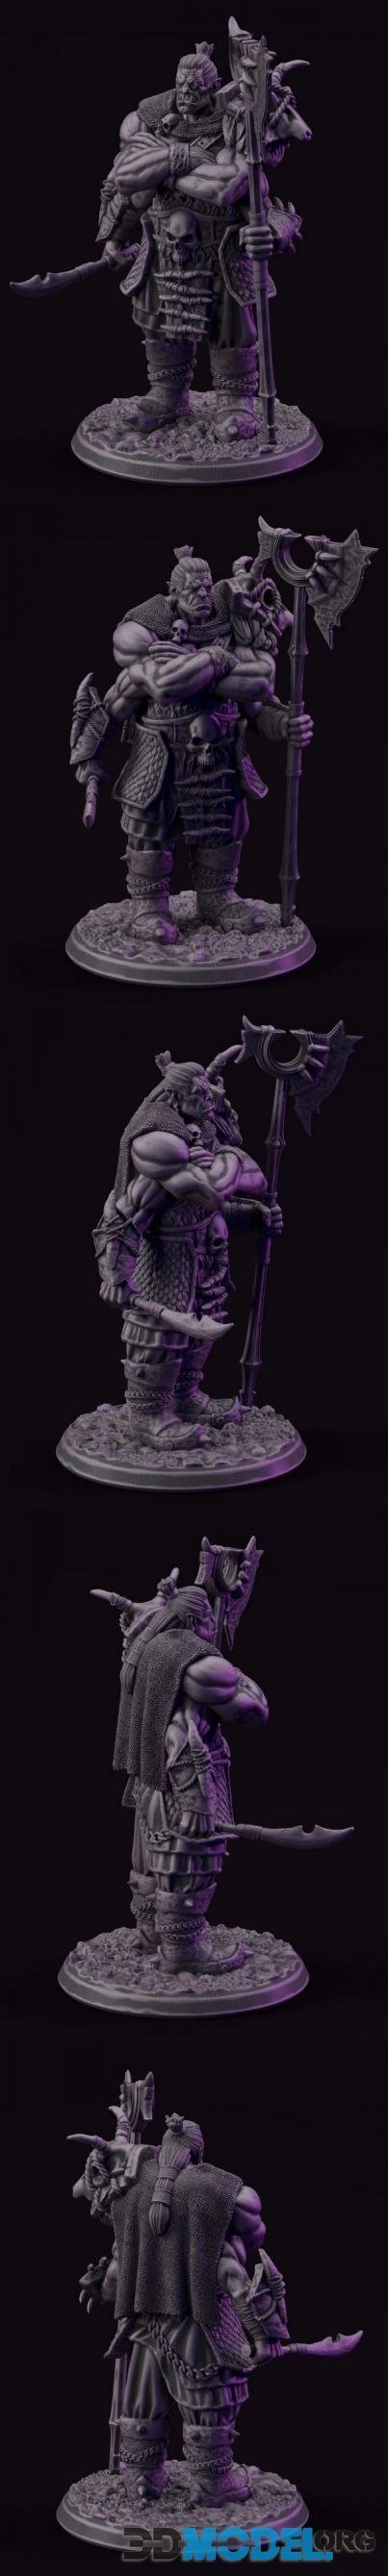 Drenosh The Orc God – Sculpture